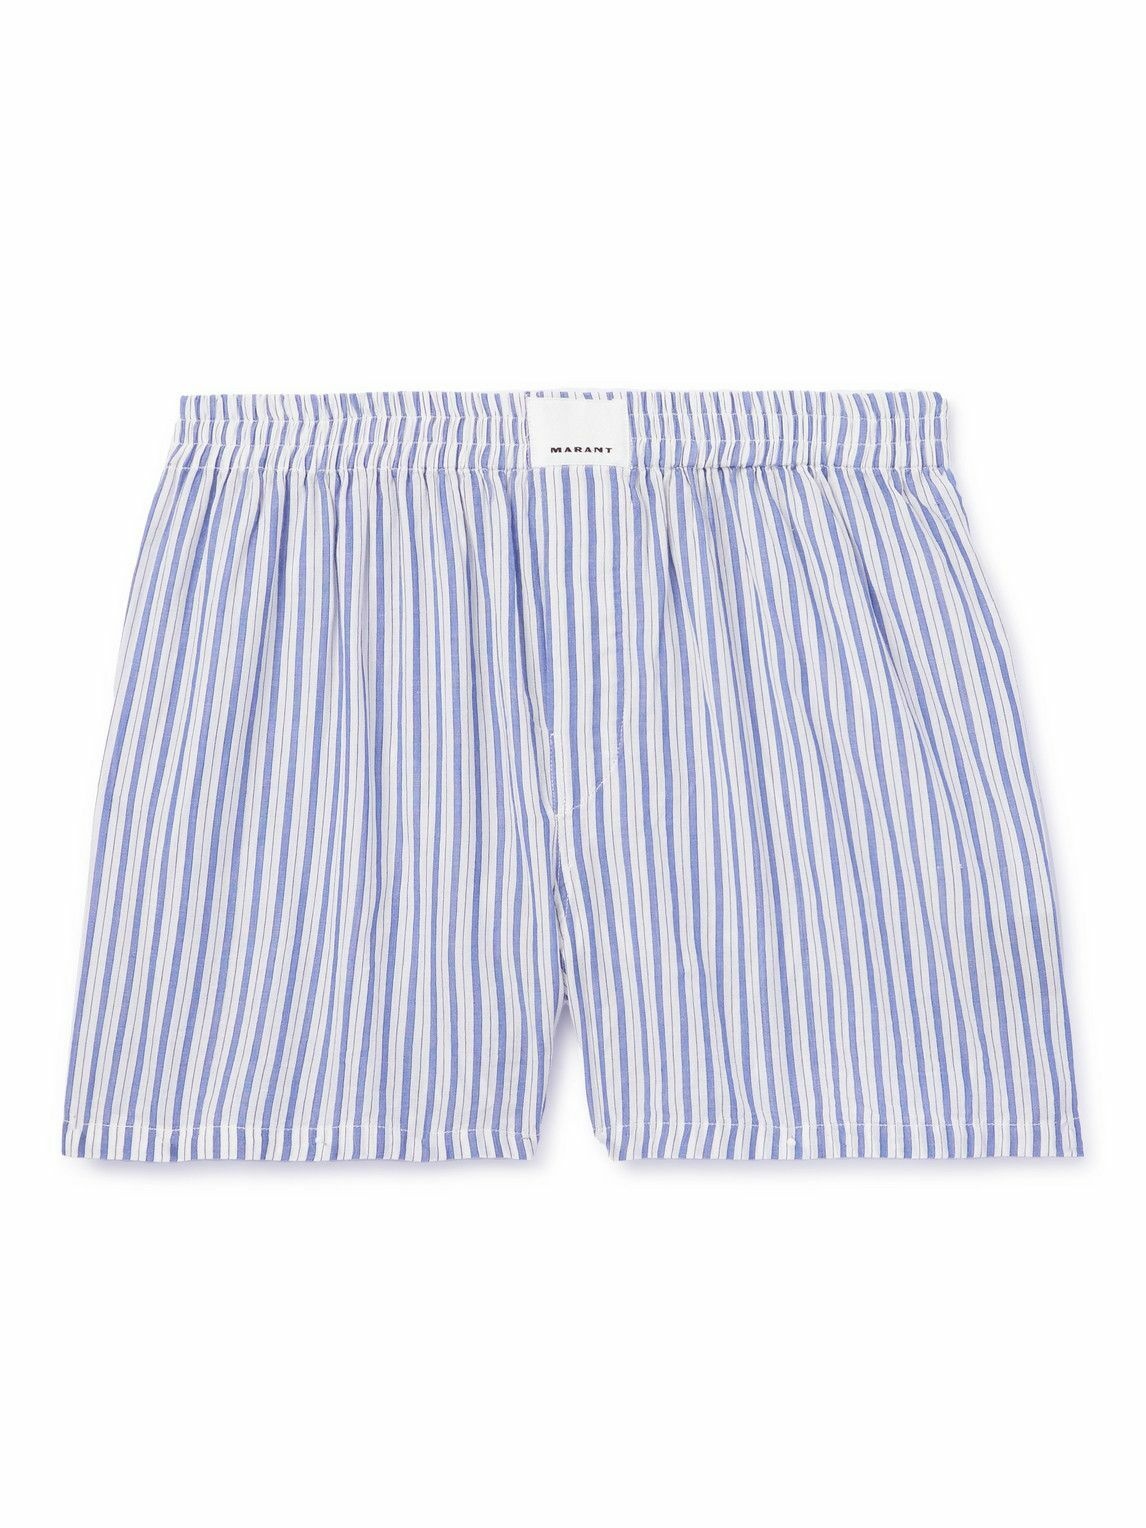 Photo: Marant - Barny Striped Boxer Shorts - Blue